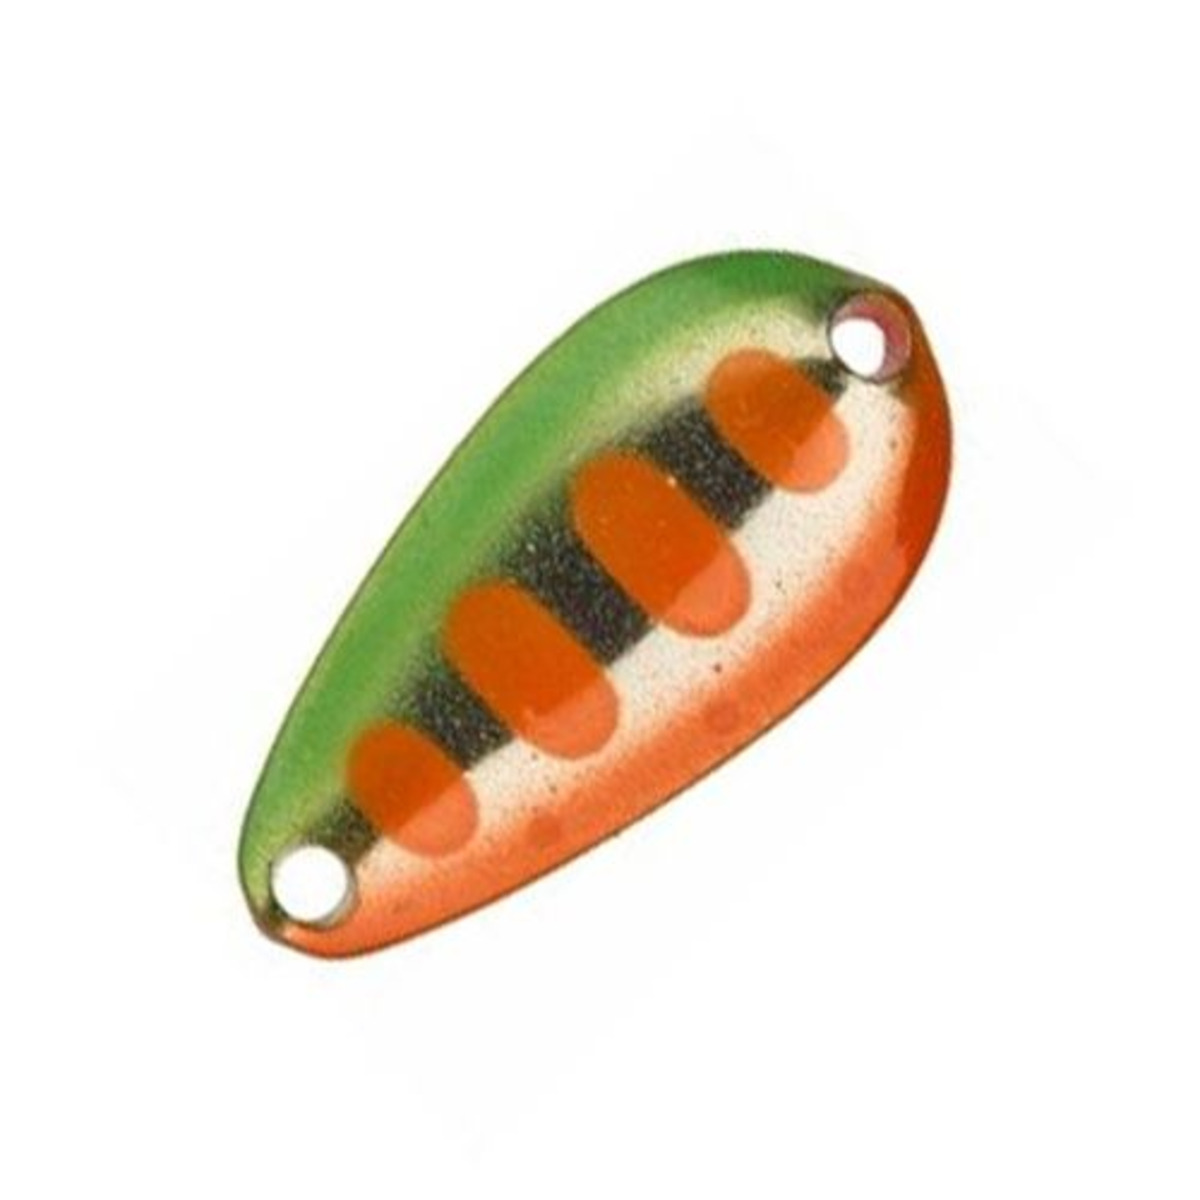 Illex Tearo 2.4 G - 2.4 g - 22 mm - Green Orange Yamame-Fluo Pink